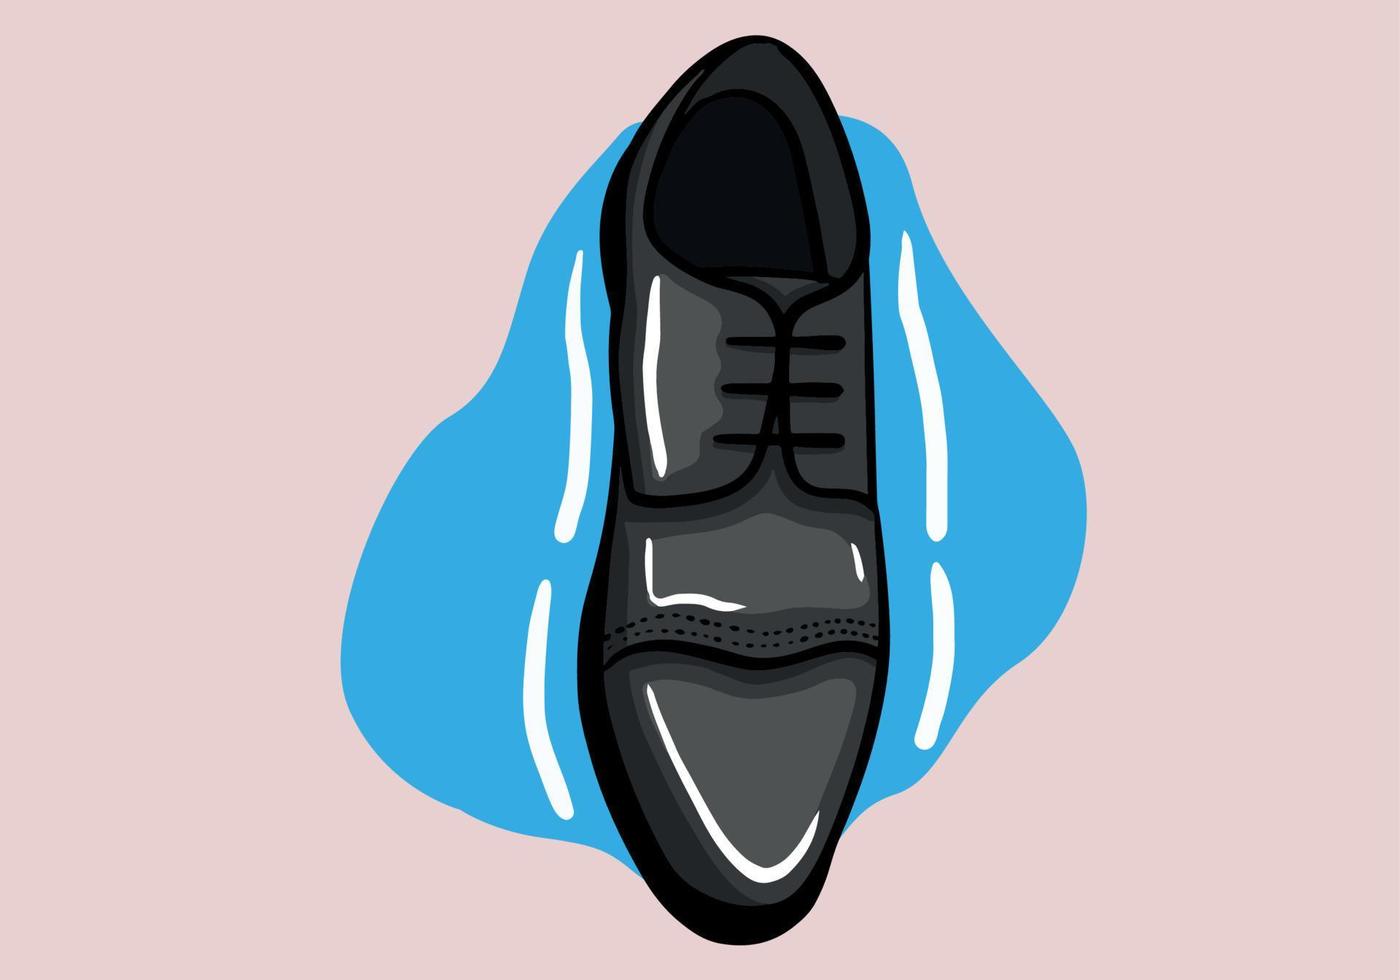 svart herr- glansig patent läder sko. vektor hand dragen illustration av en isolerat bakgrund.